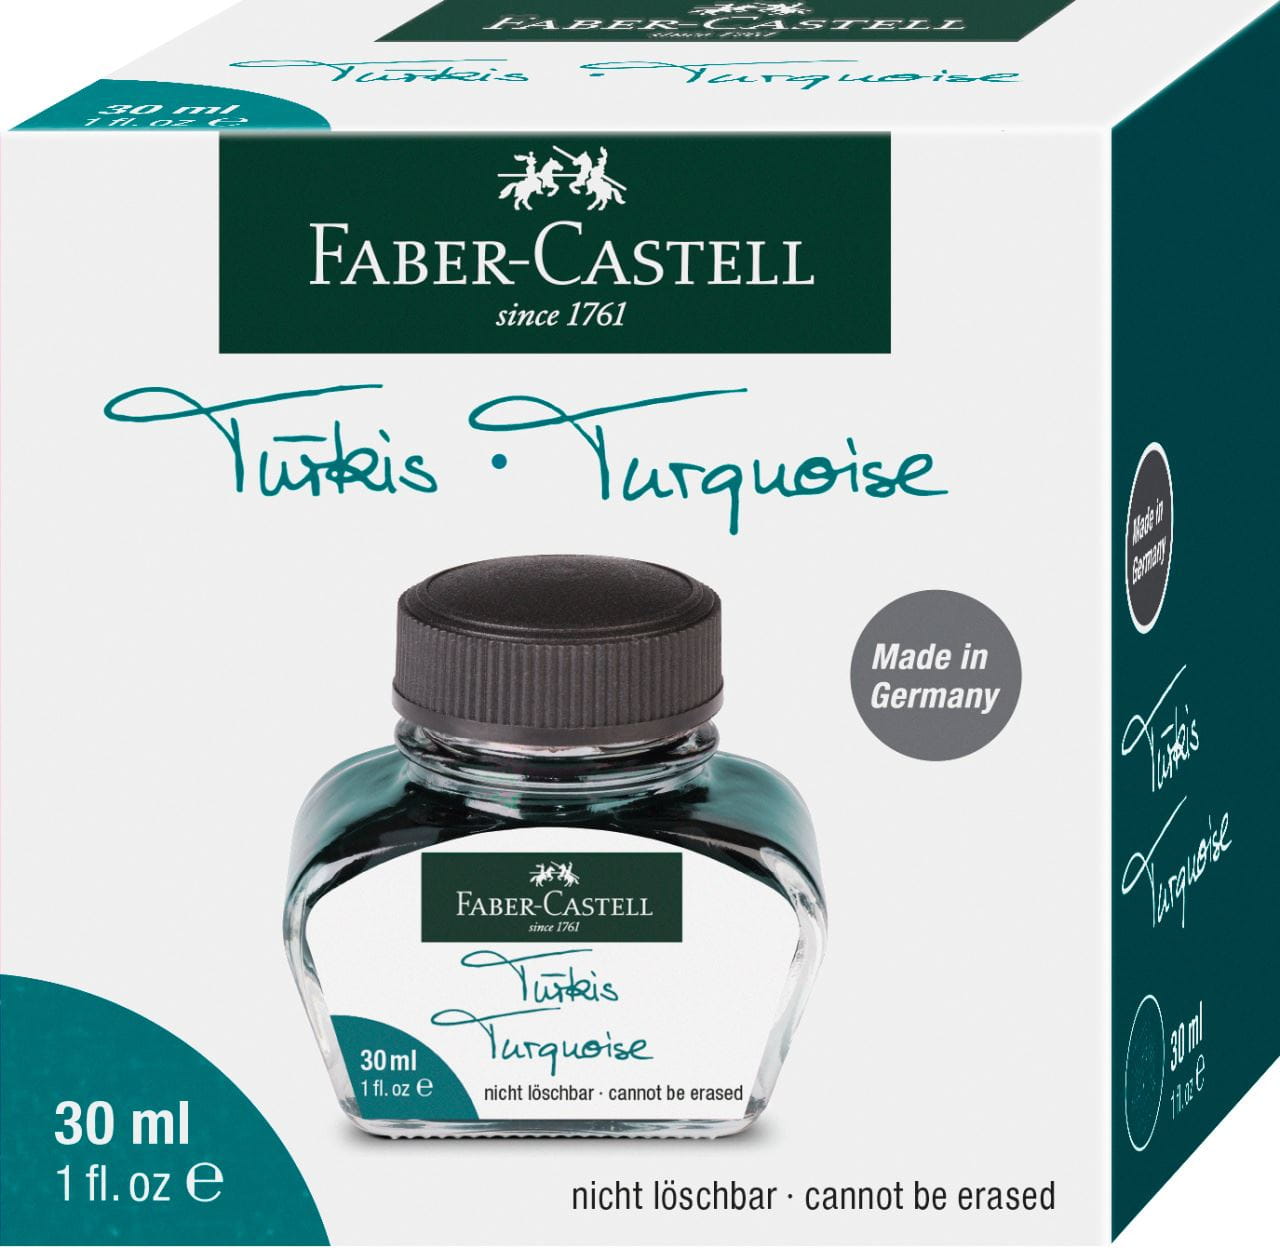 Faber-Castell - Inkoust pro plnicí pera, tyrkysová barva